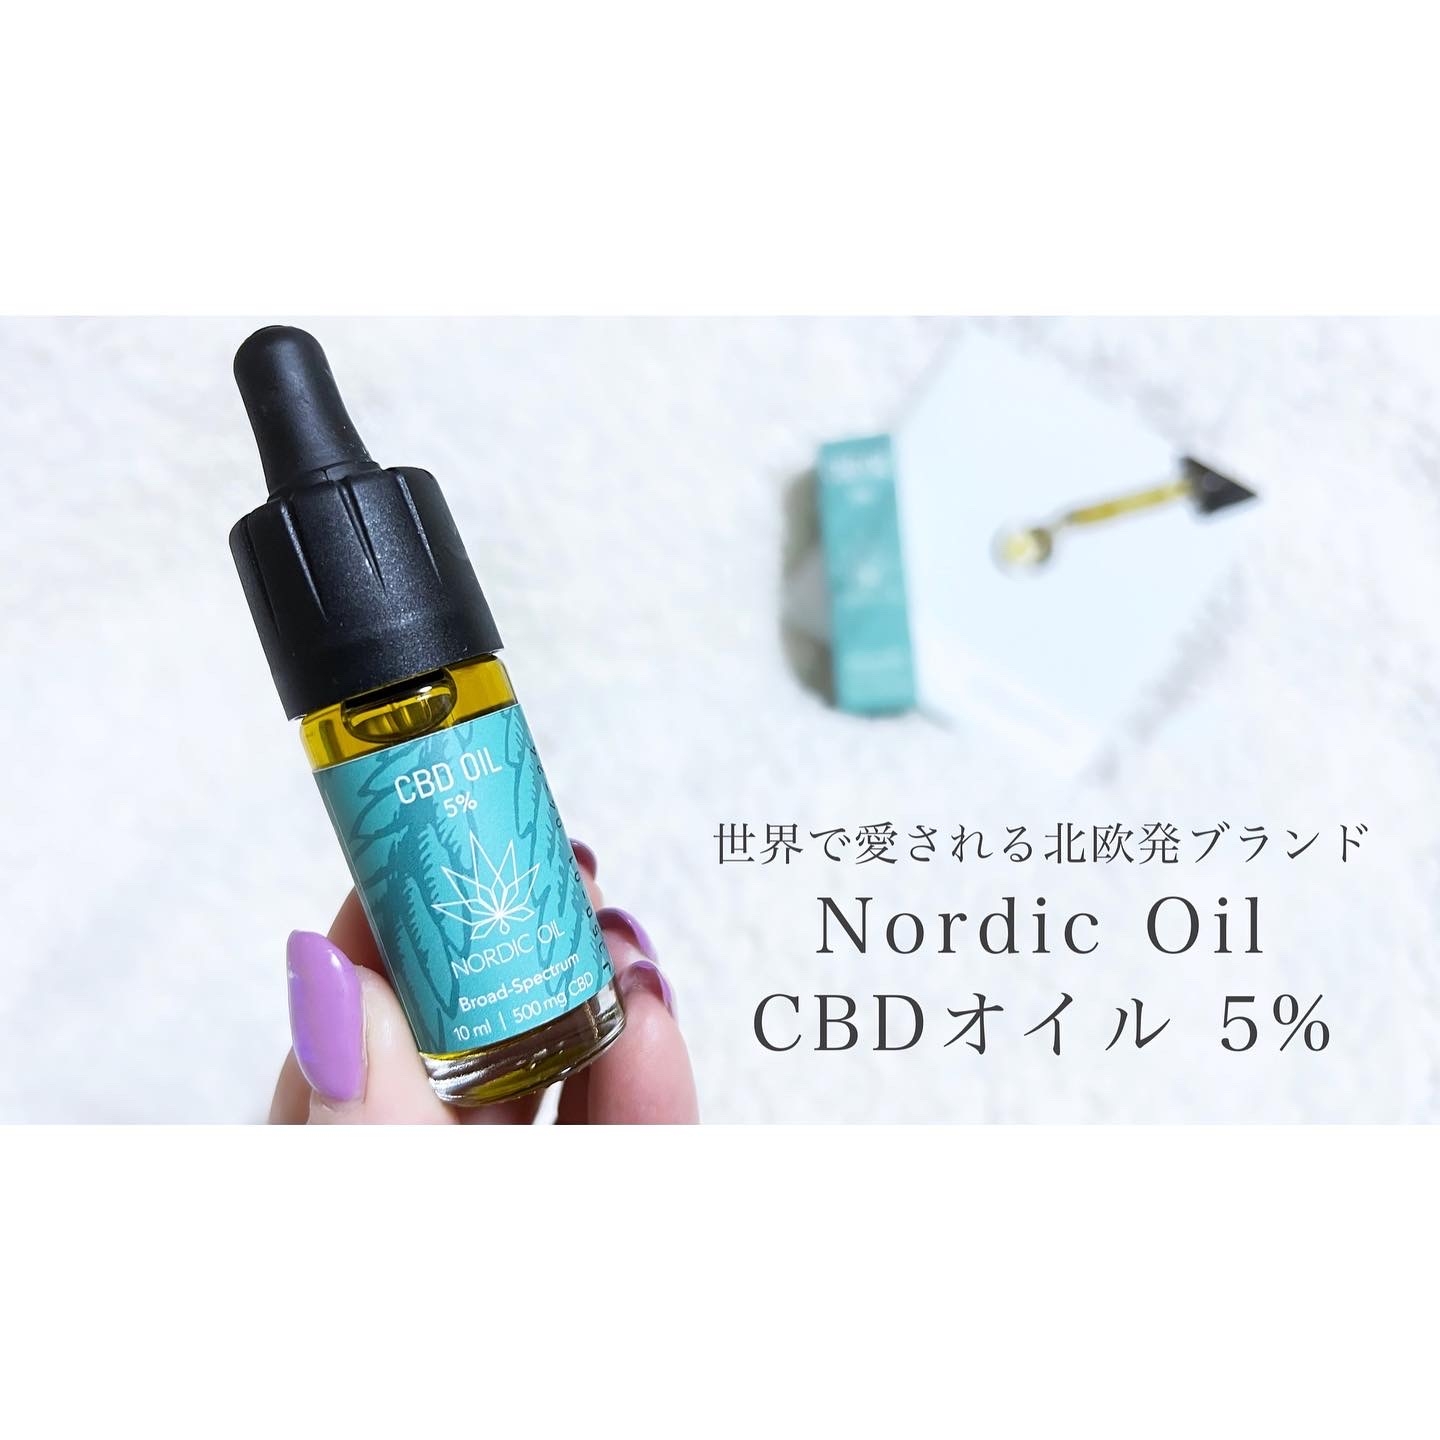 NORDIC OIL(ノルディックオイル) CBDオイル 5%の良い点・メリットに関するcosmemo2021さんの口コミ画像1